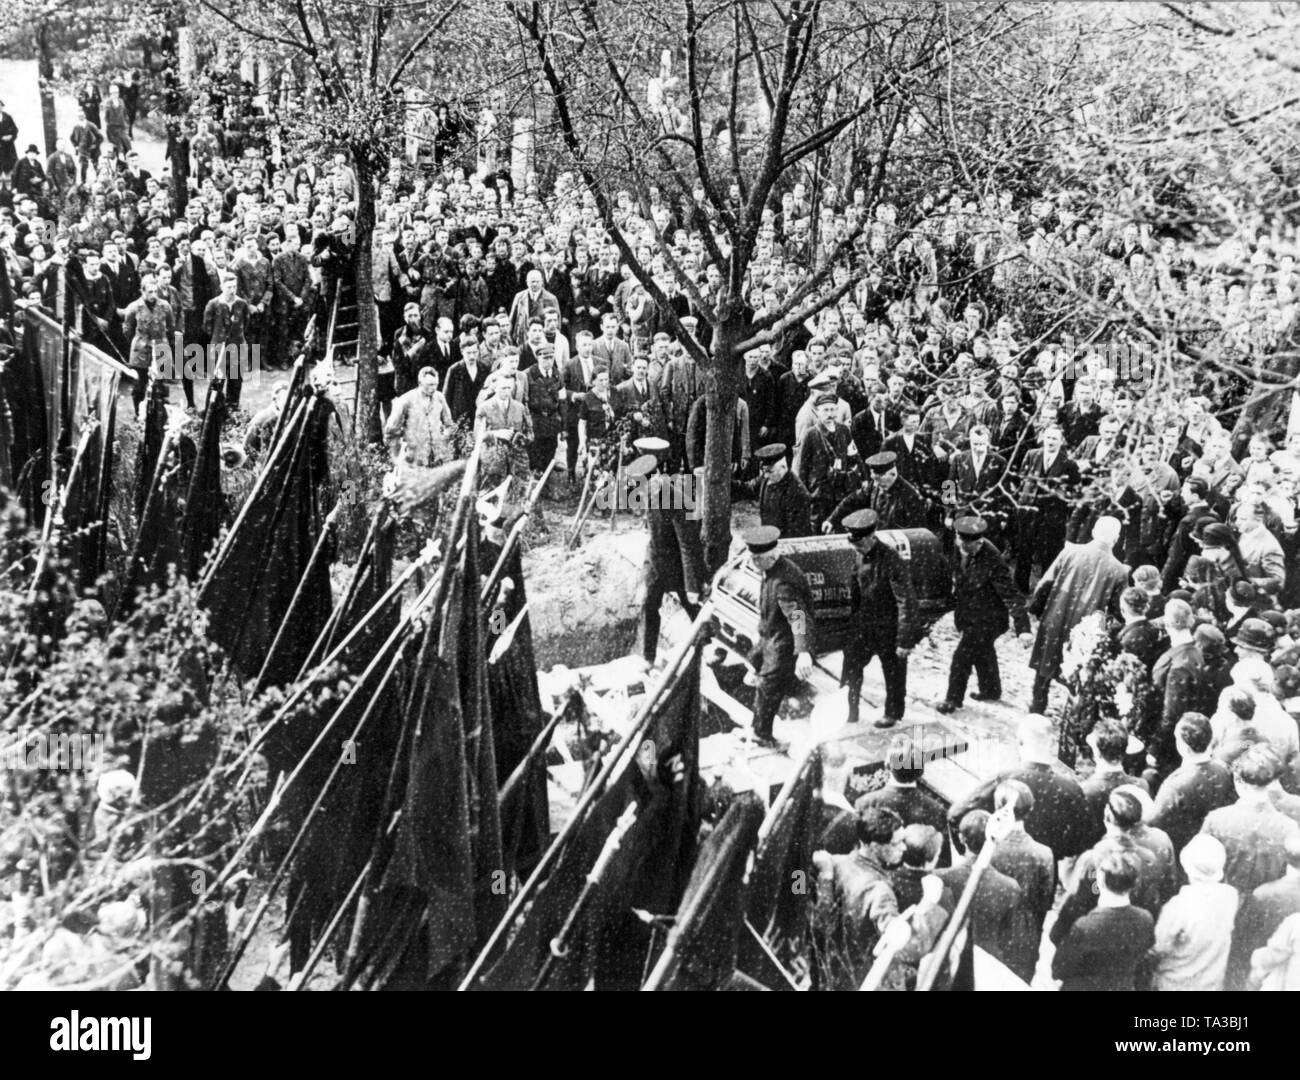 Tre i comunisti sono stati uccisi in battaglie di strada il giorno di maggio a Berlino. Questa fotografia mostra la sepoltura delle vittime del Roter Frontkaempferbund e i loro compagni a Friedrichsfelde. Foto Stock